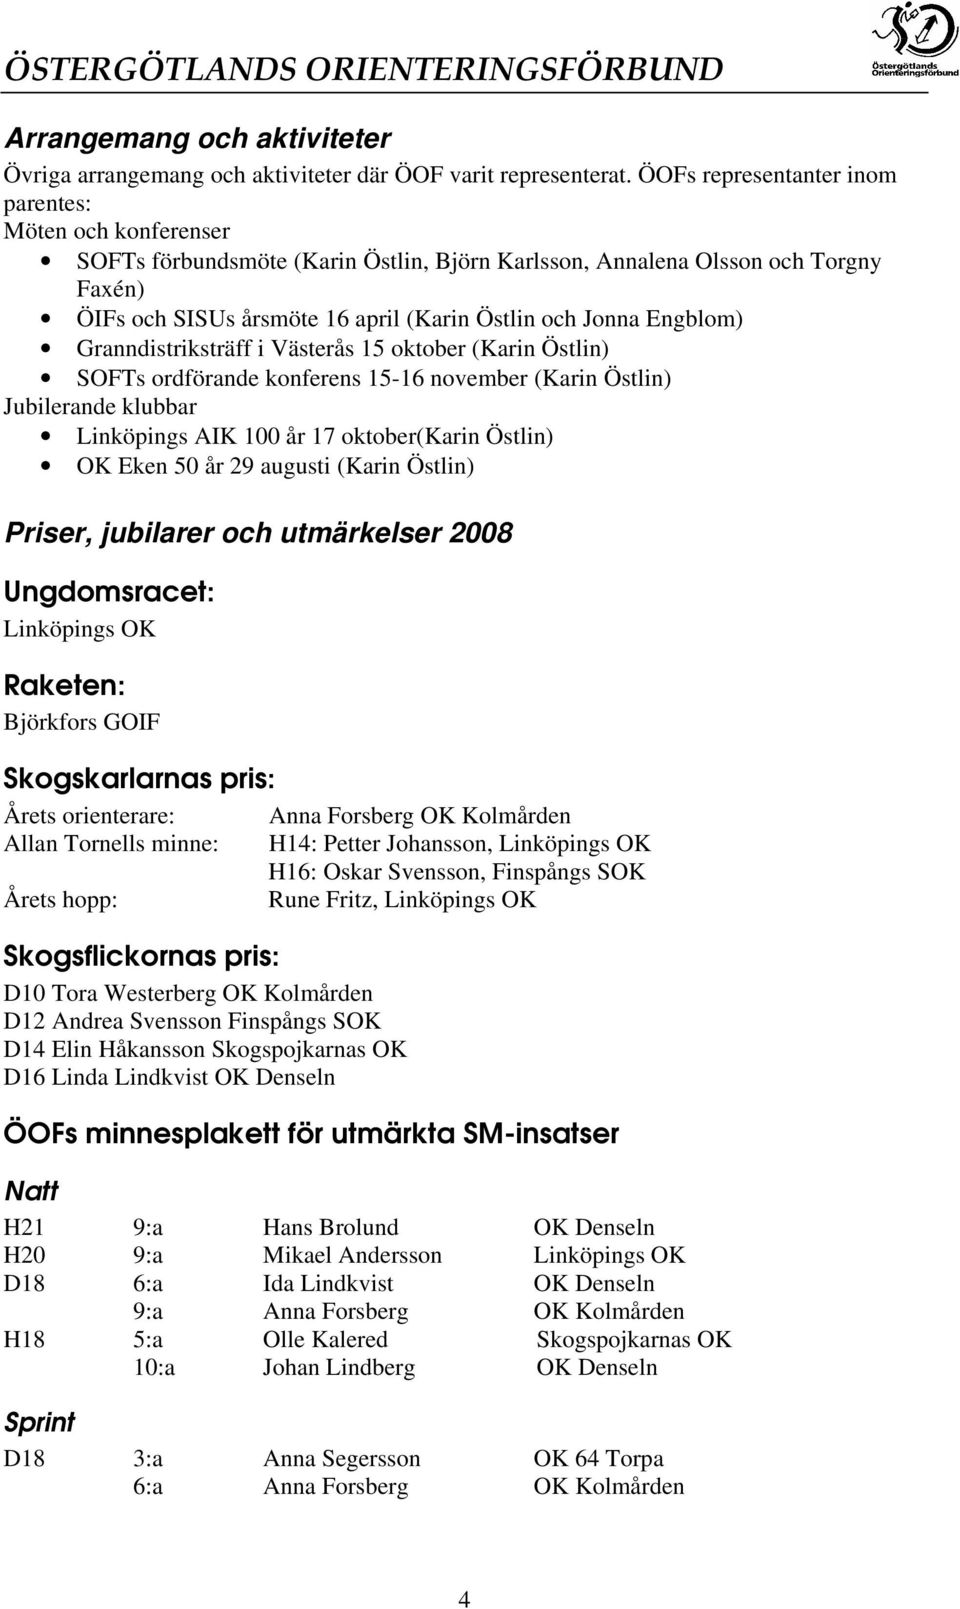 Engblom) Granndistriksträff i Västerås 15 oktober (Karin Östlin) SOFTs ordförande konferens 15-16 november (Karin Östlin) Jubilerande klubbar Linköpings AIK 100 år 17 oktober(karin Östlin) OK Eken 50